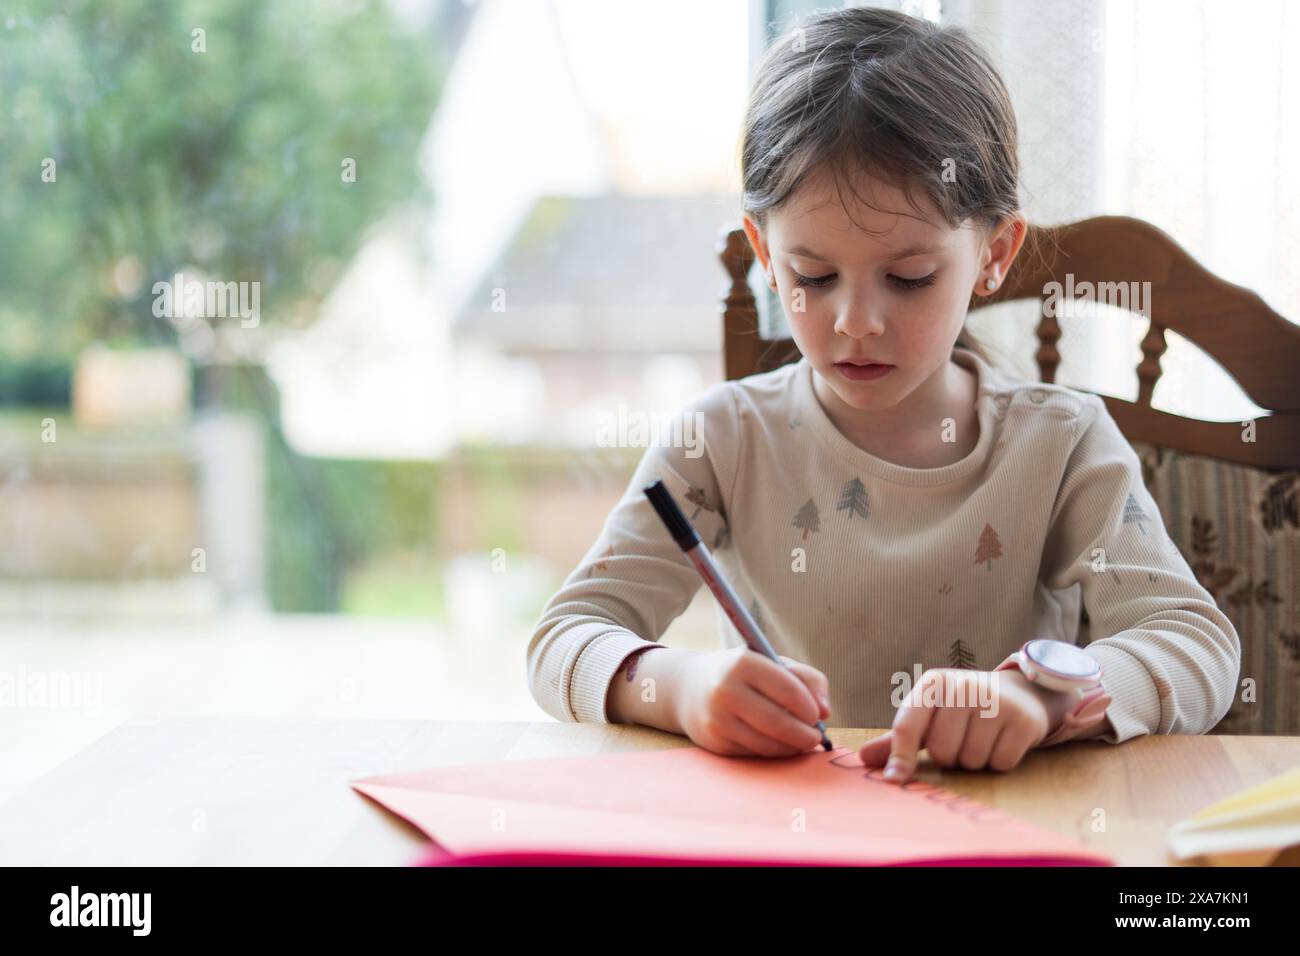 Une petite fille mignonne avec une queue de cheval, assise à une table de salon, fait ses devoirs, tenant un stylo dans sa main. Concept d'éducation à domicile. Banque D'Images